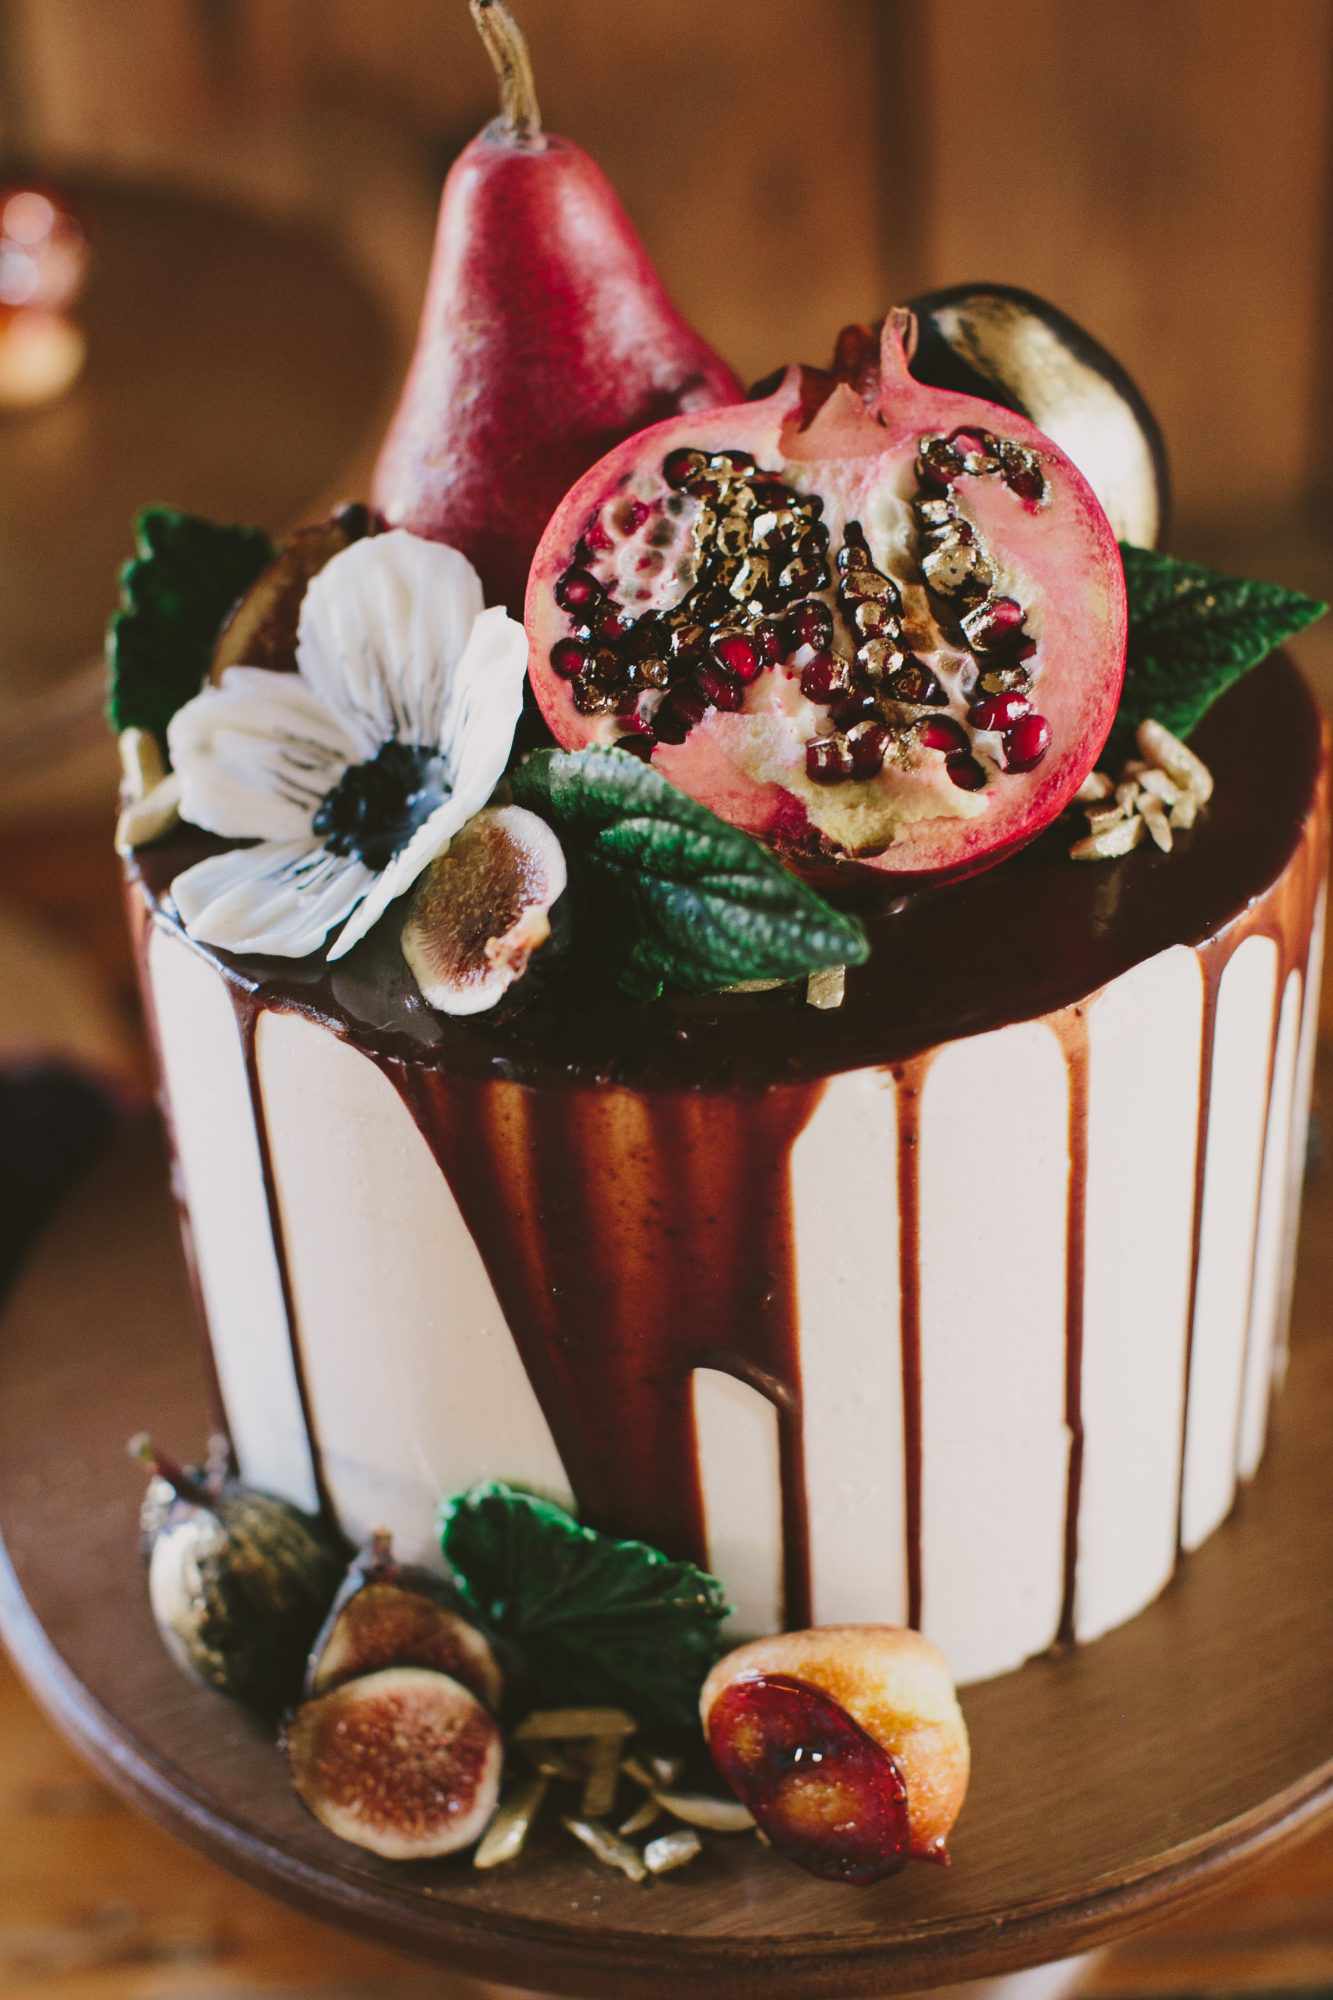 Wedding Cake with Fruit Decorations